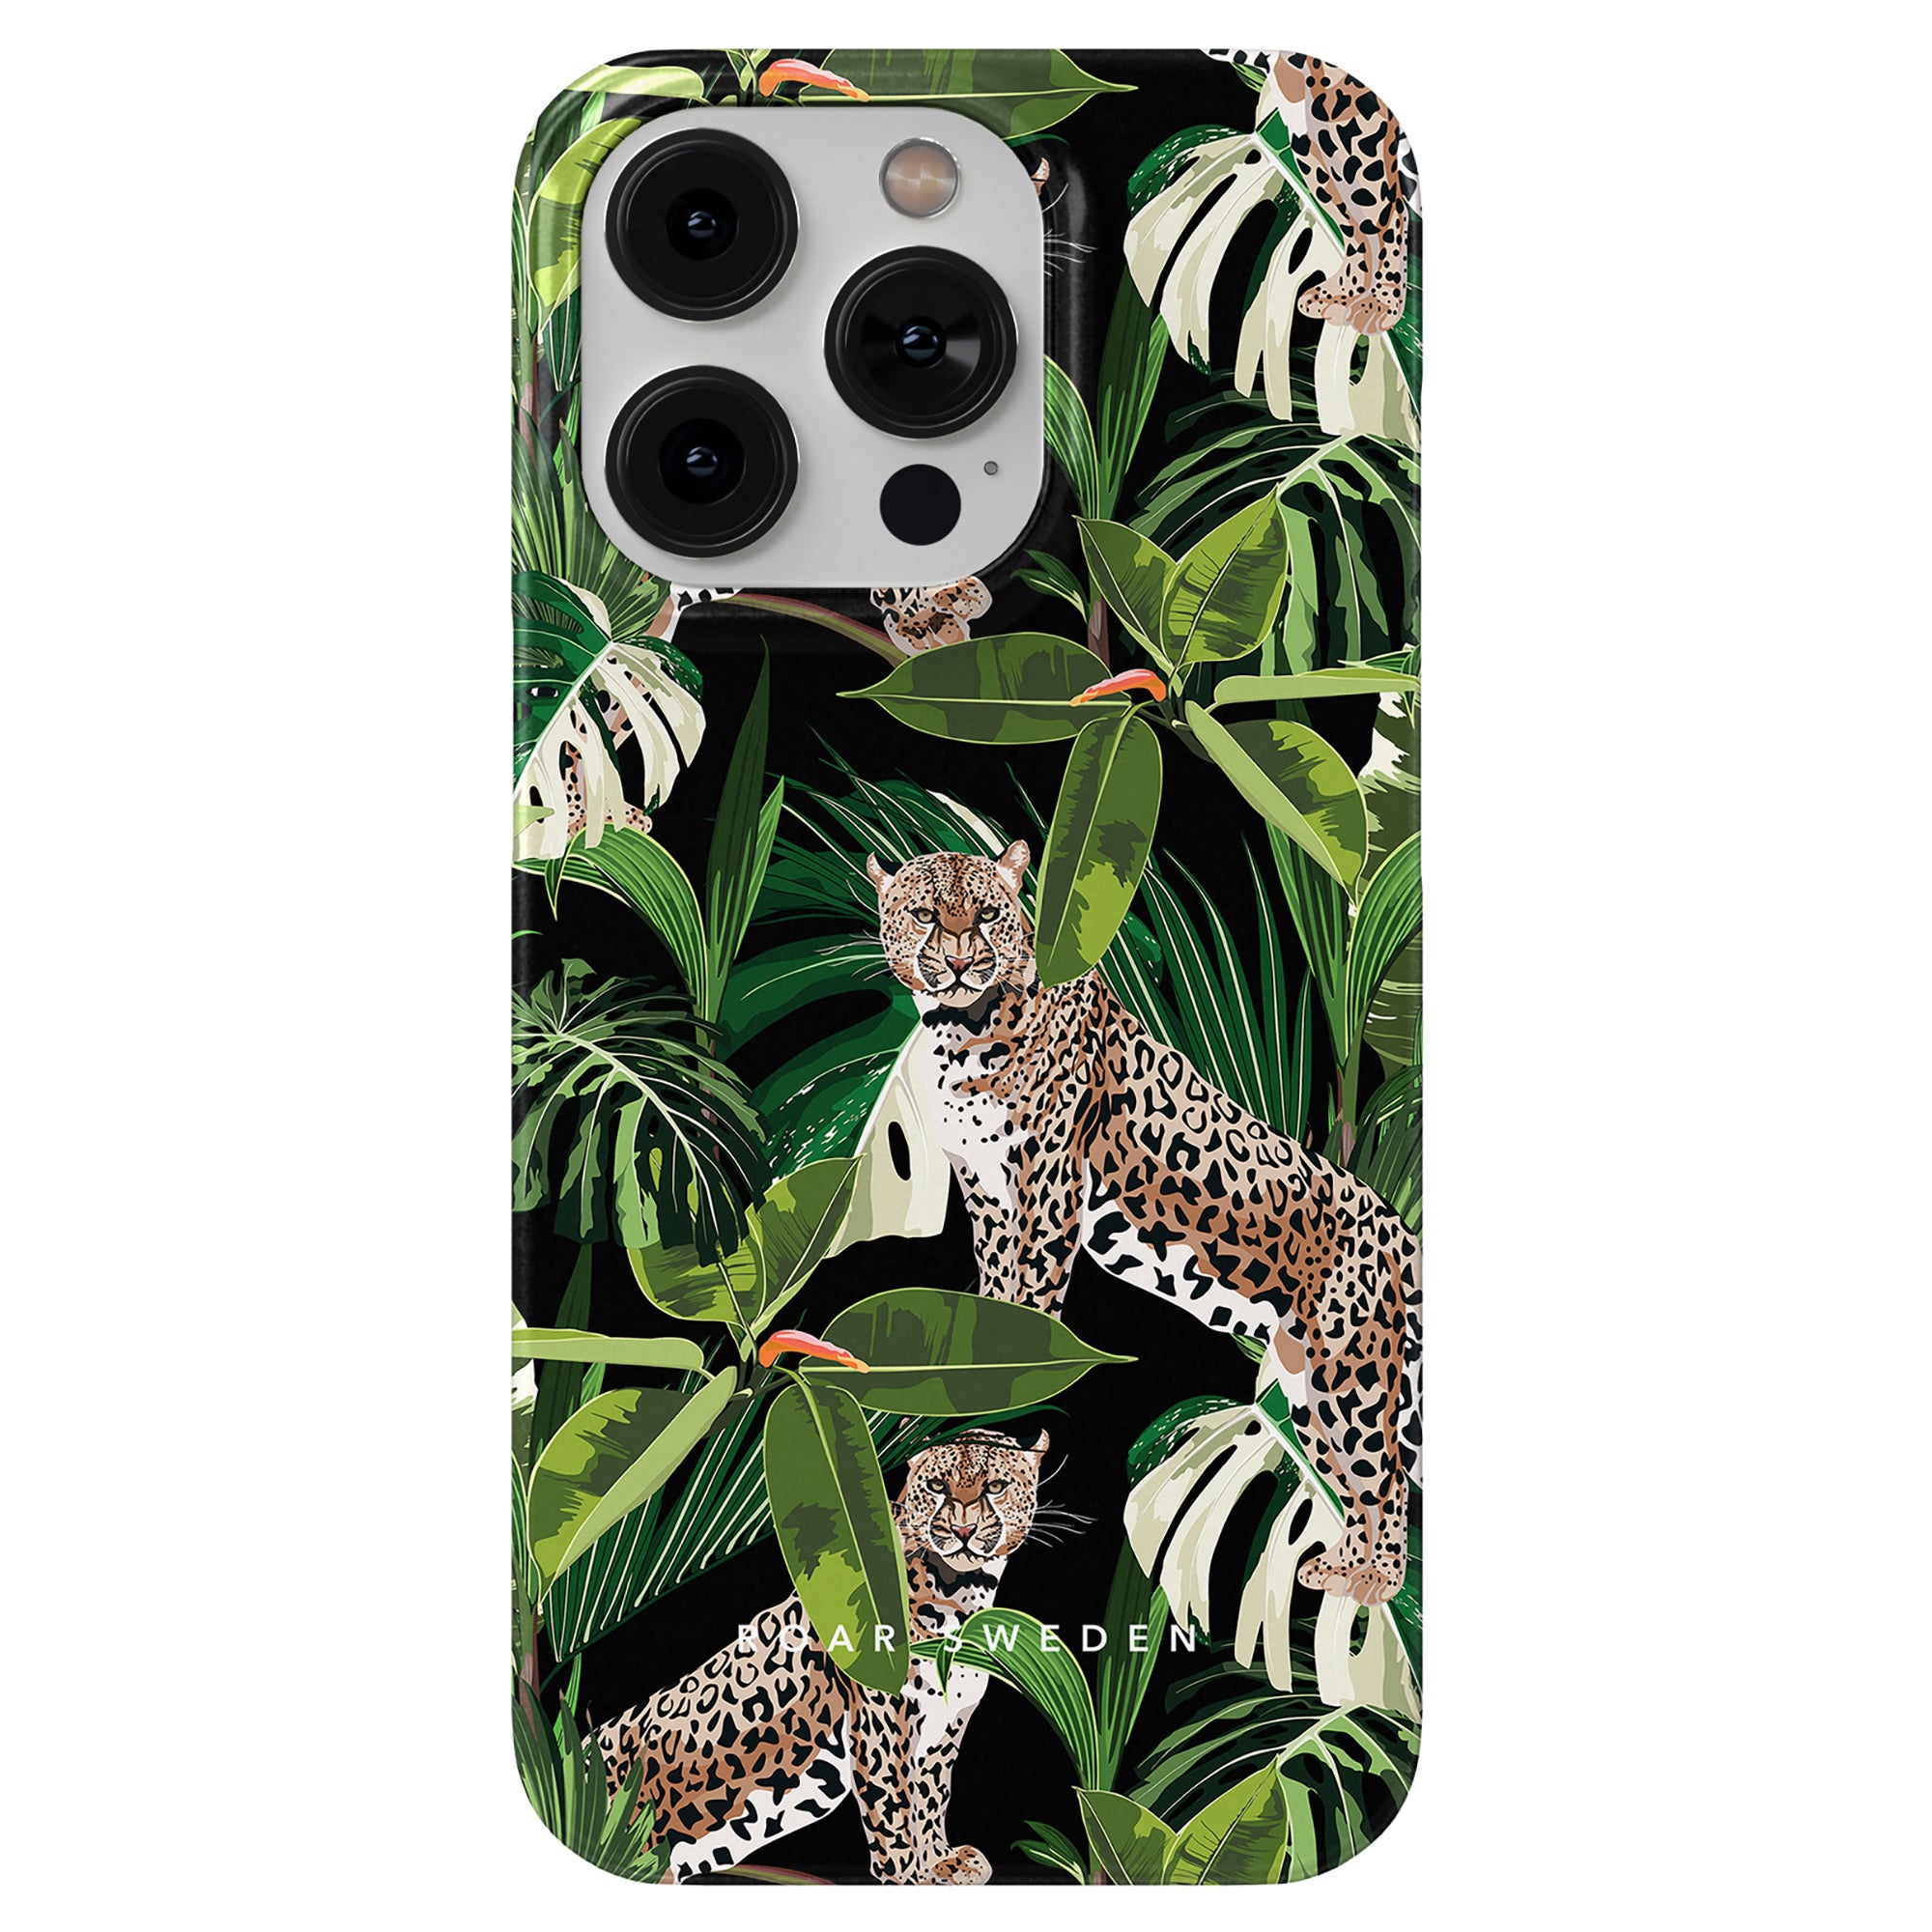 A Rainforest - Slim case telefonfodral med regnskogens puls och liv, med leopardmönster.